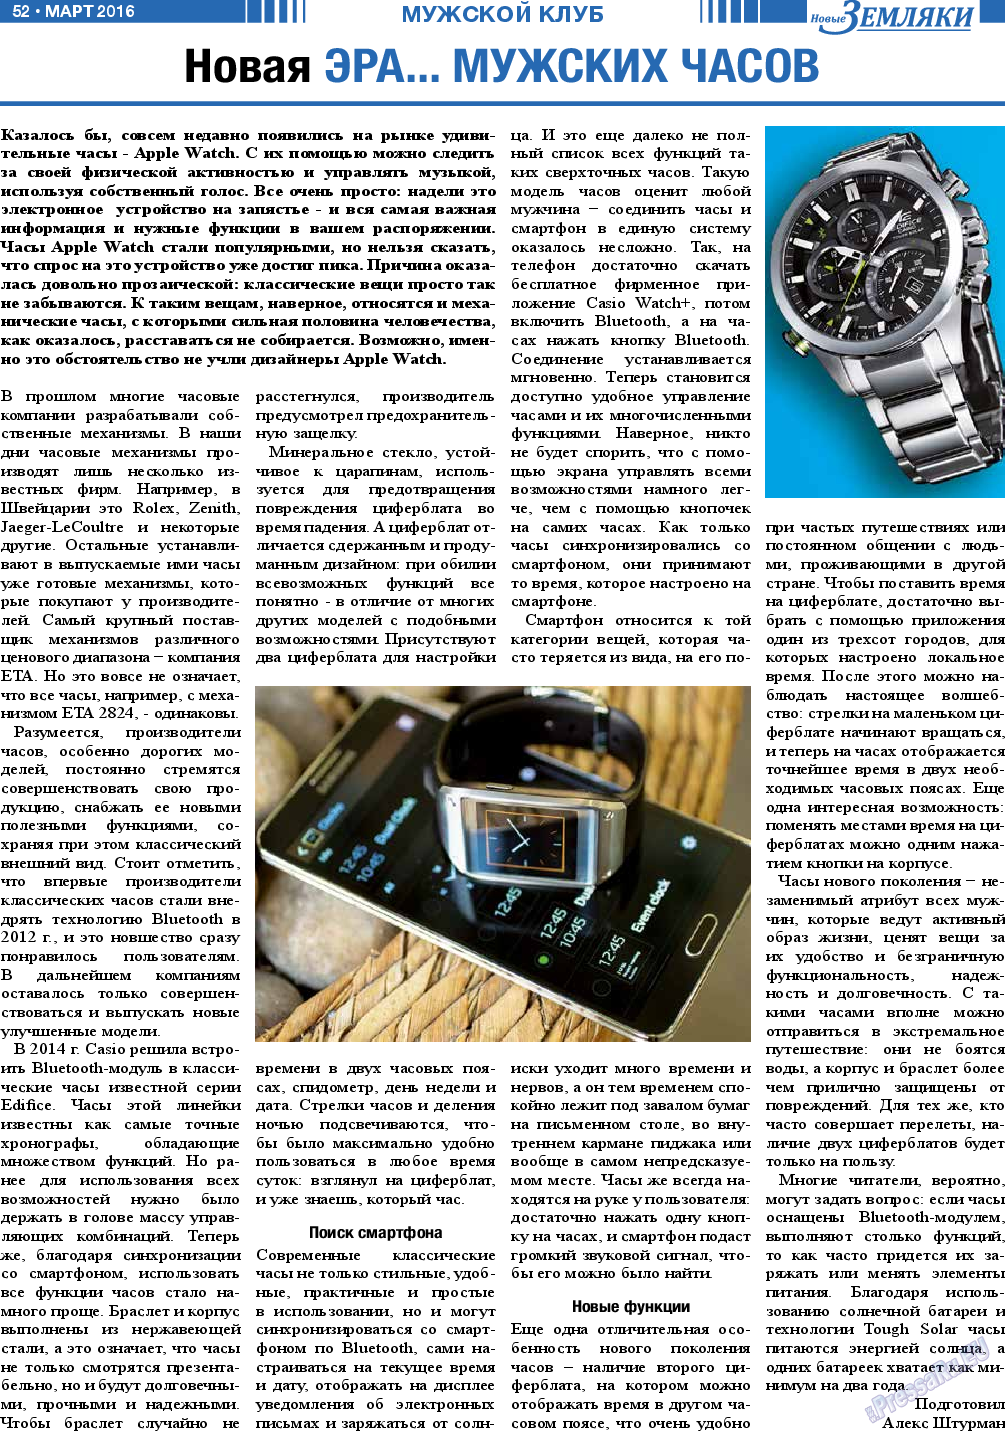 Новые Земляки, газета. 2016 №3 стр.52